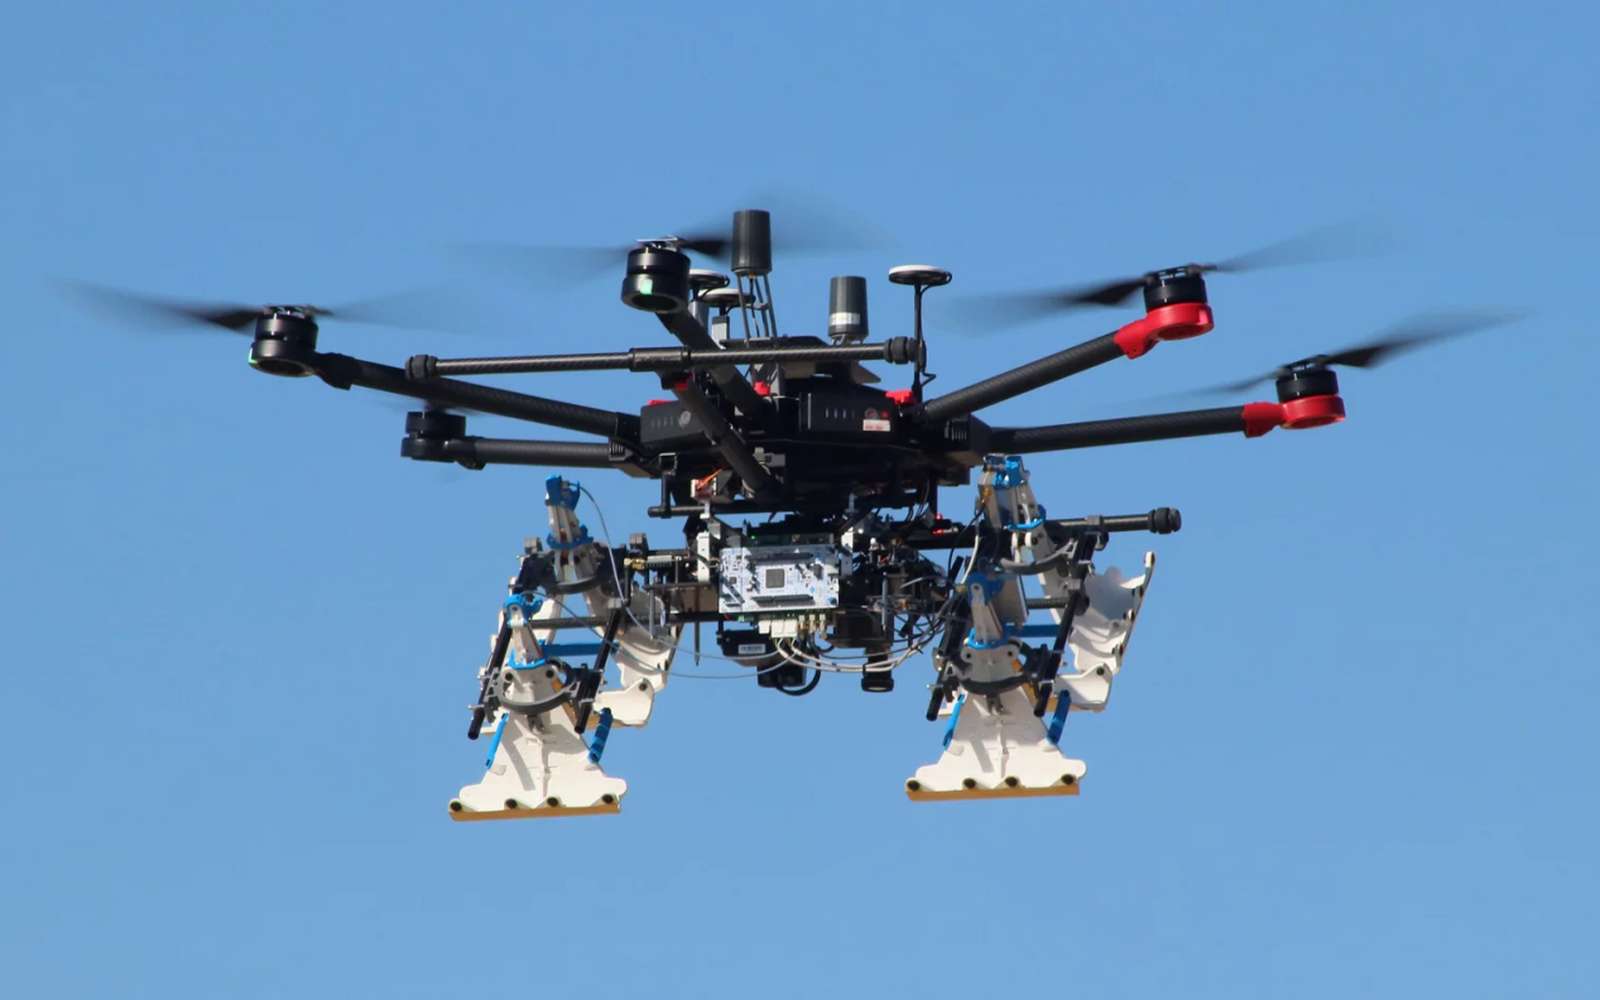 Le drone vole à une hauteur de 5 mètres au-dessus de la zone minée et son radar épaulé par des capteurs permettent de détecter les explosifs sous le sol. © Urs Endress